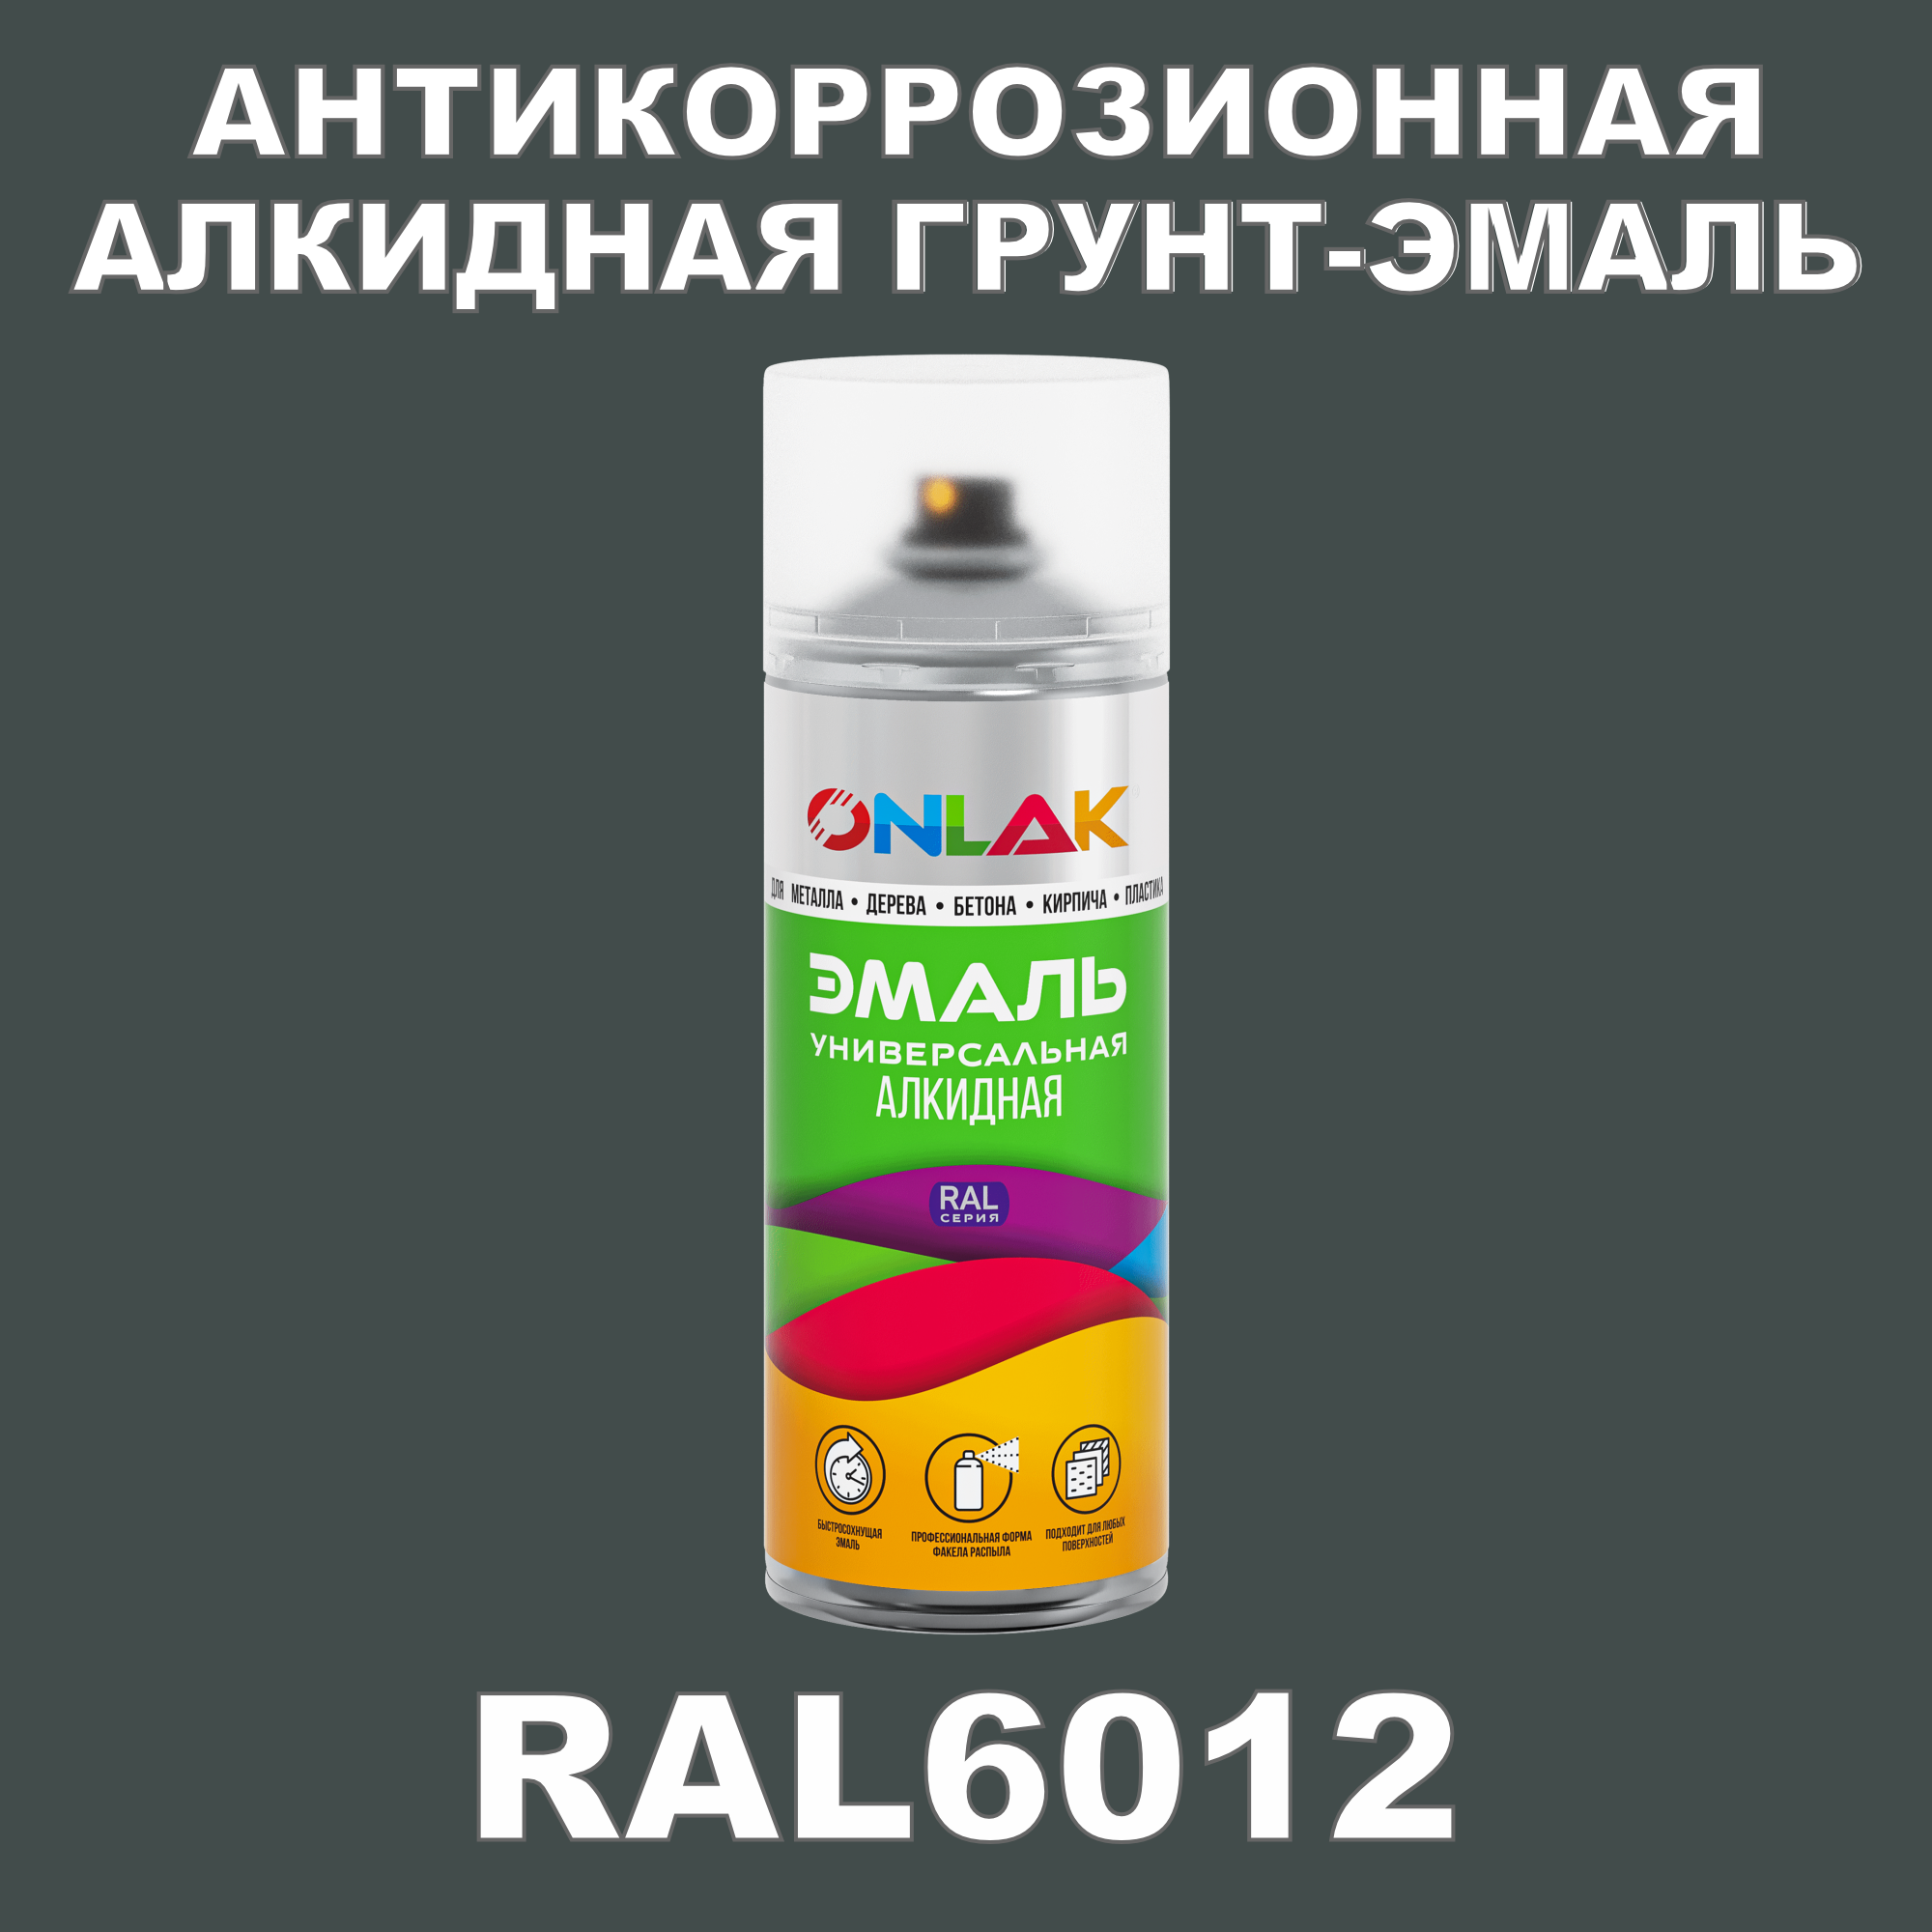 Антикоррозионная грунт-эмаль ONLAK RAL6012 матовая для металла и защиты от ржавчины